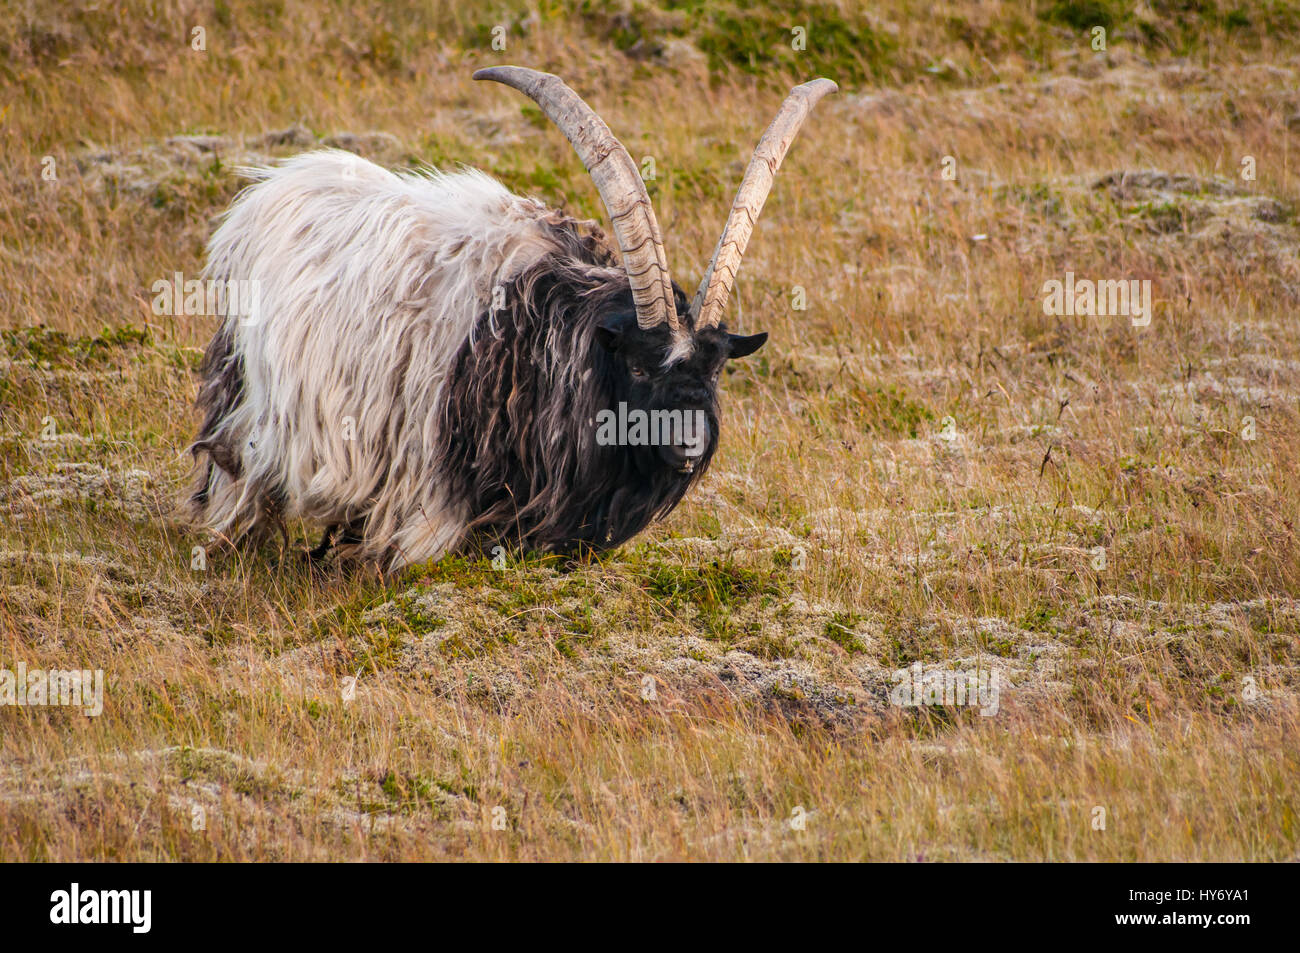 Homme de l'Islandais avec grandes cornes de chèvre, une ancienne race de chèvre domestique et la seule ferme animal parrainé par le gouvernement islandais pour l'purpos Banque D'Images